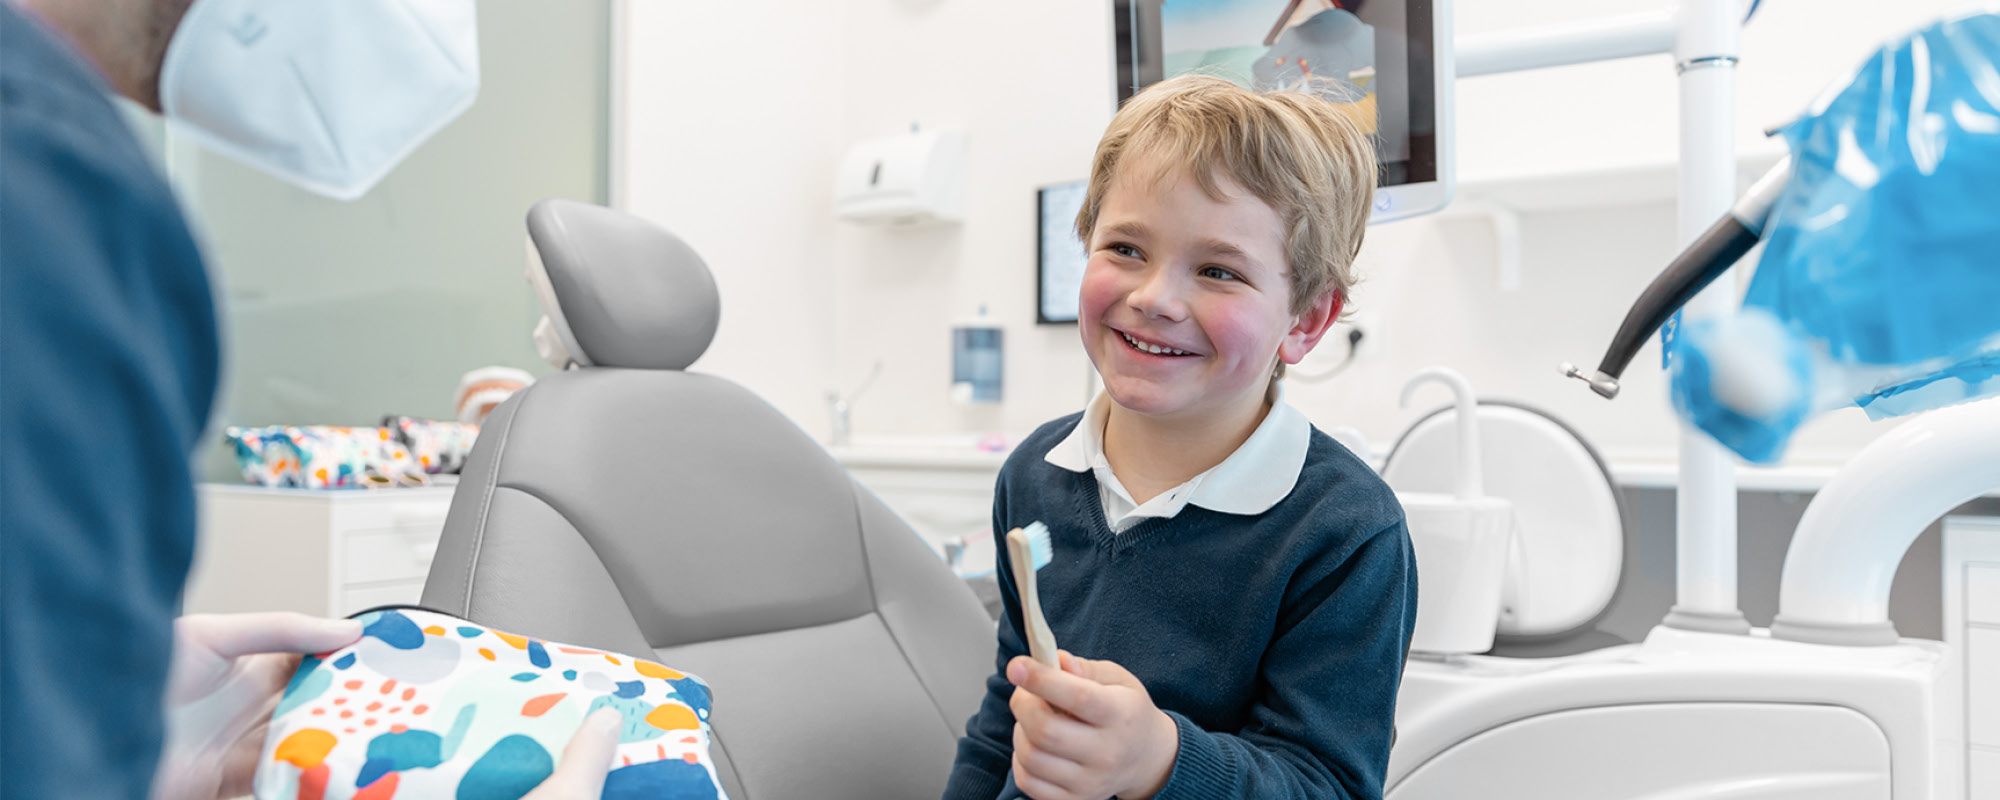 Prima visita dal dentista per i bambini: quando farla e come prepararli per un’esperienza tranquilla e senza paura?